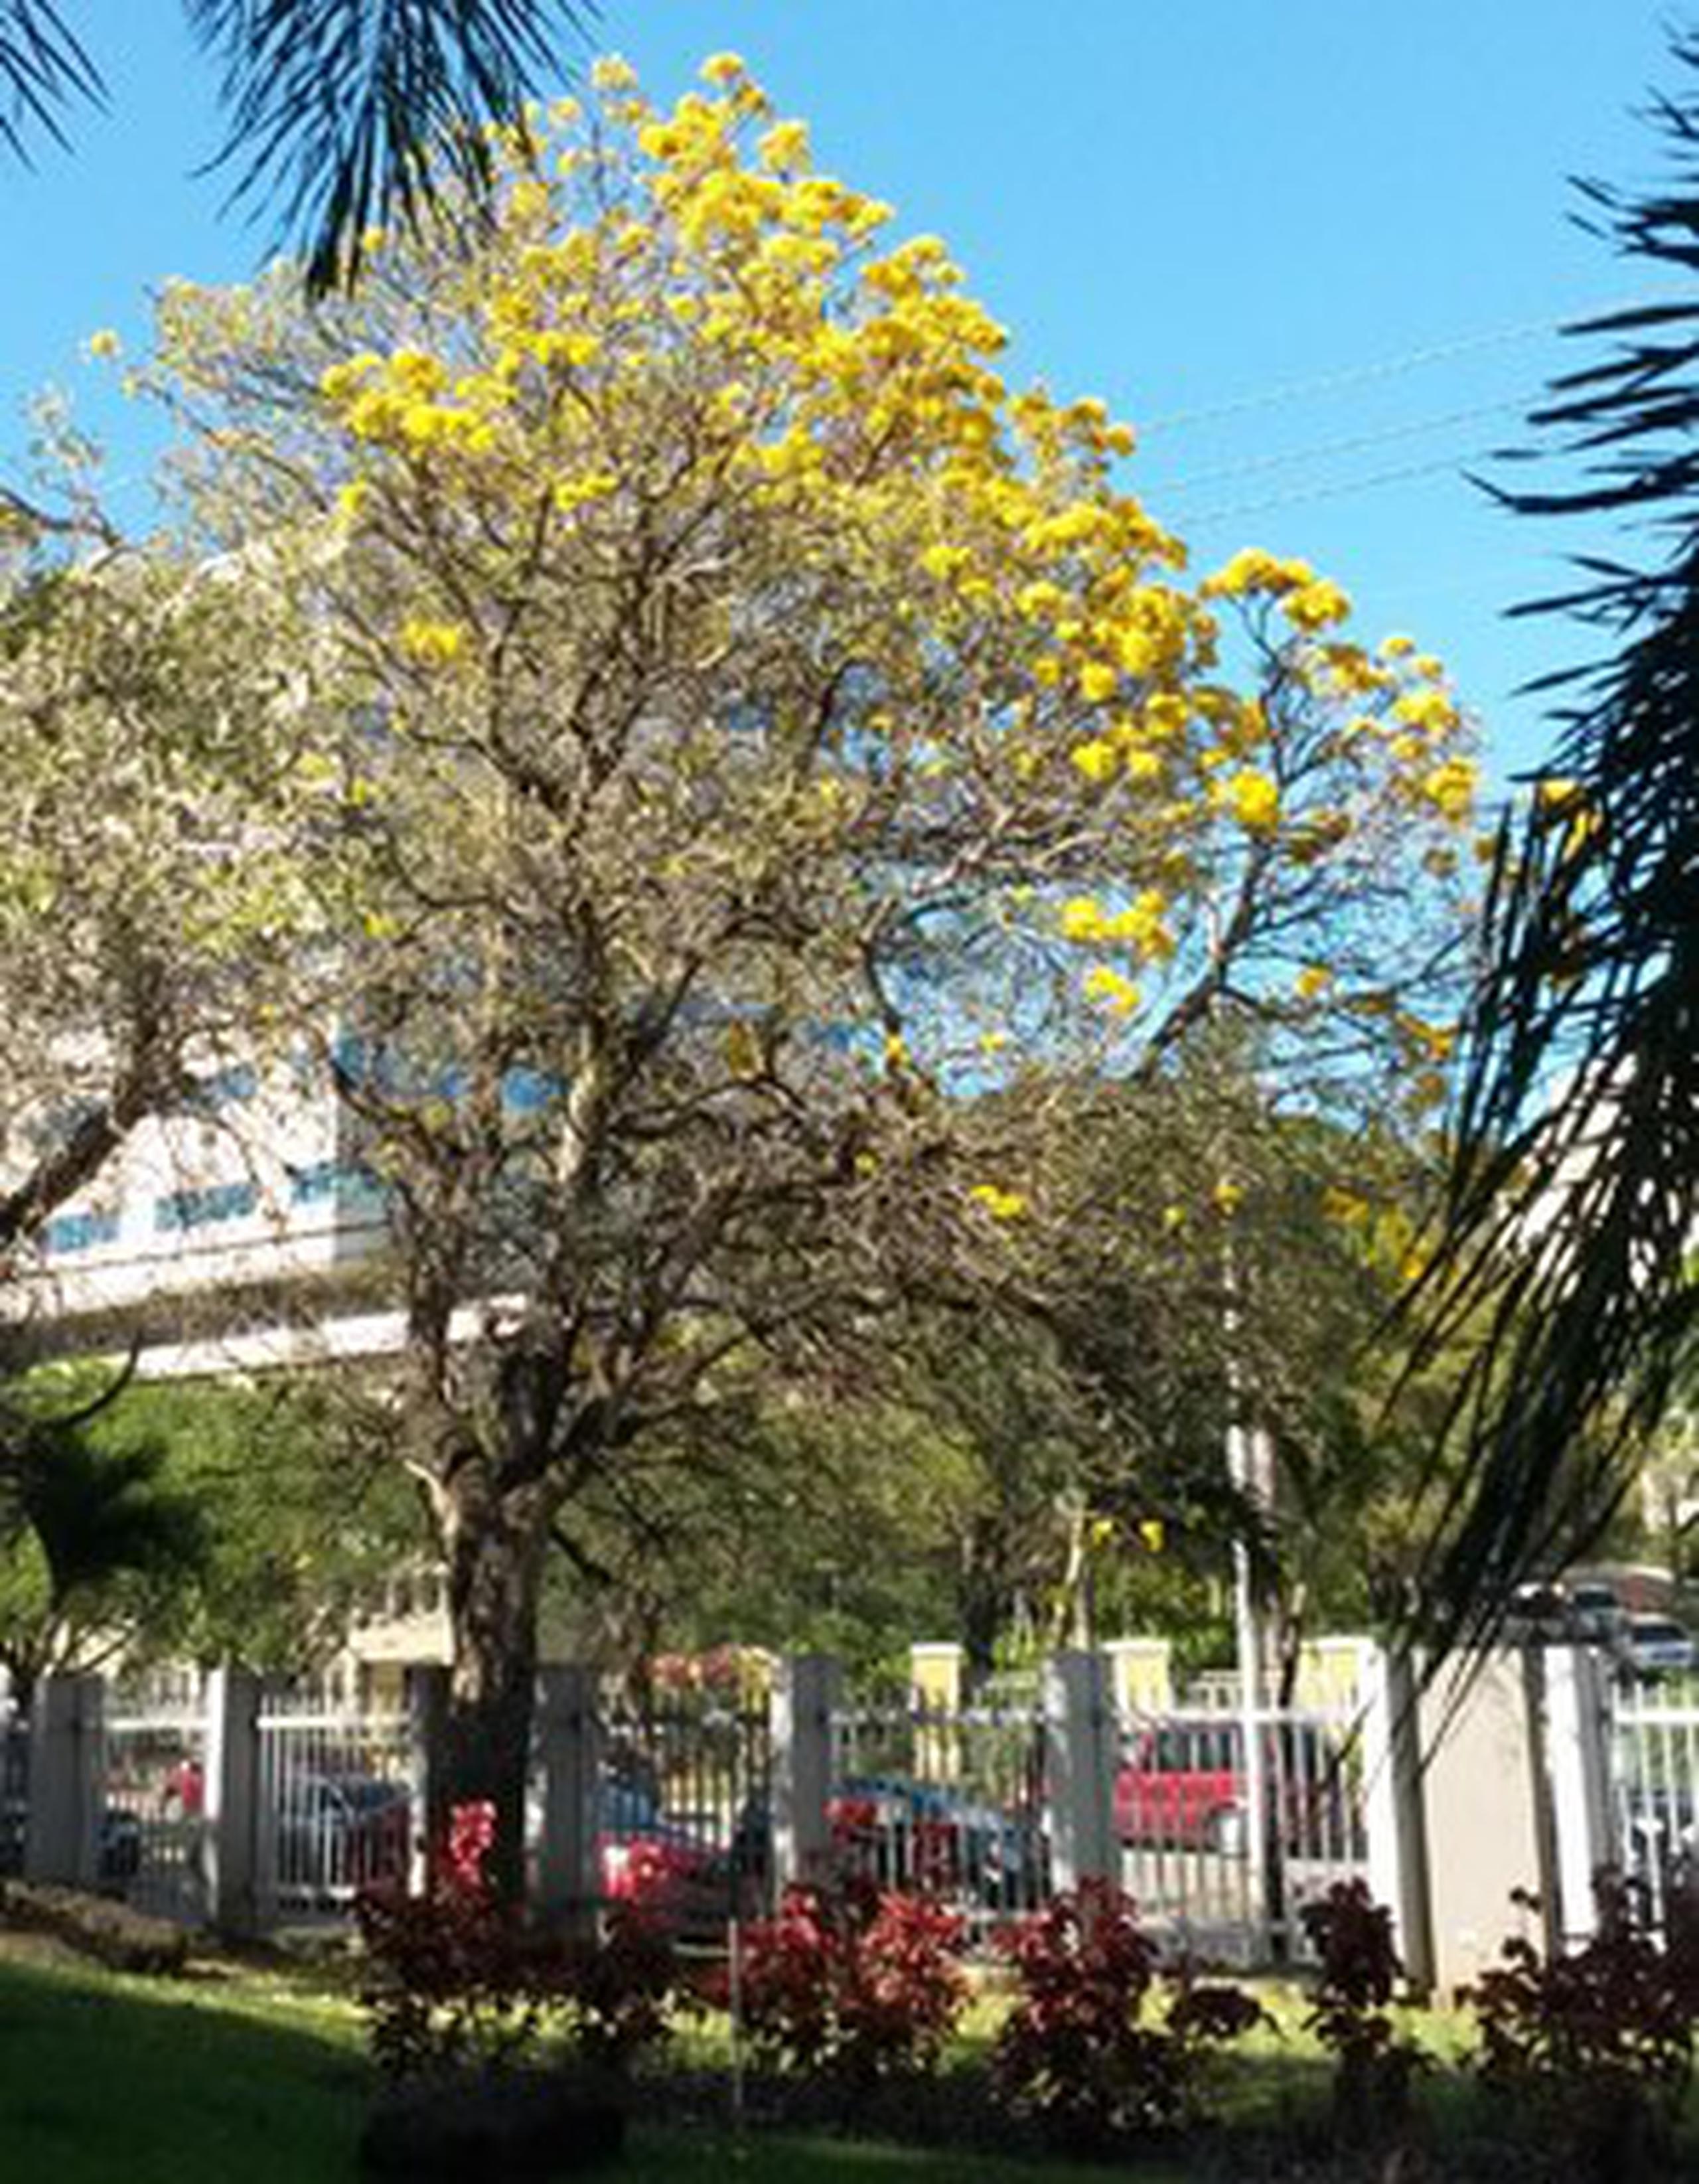 Este árbol es nativo de Argentina y Brasil y puede alcanzar los 35 pies de altura. (jvazquez@primerahora.com)